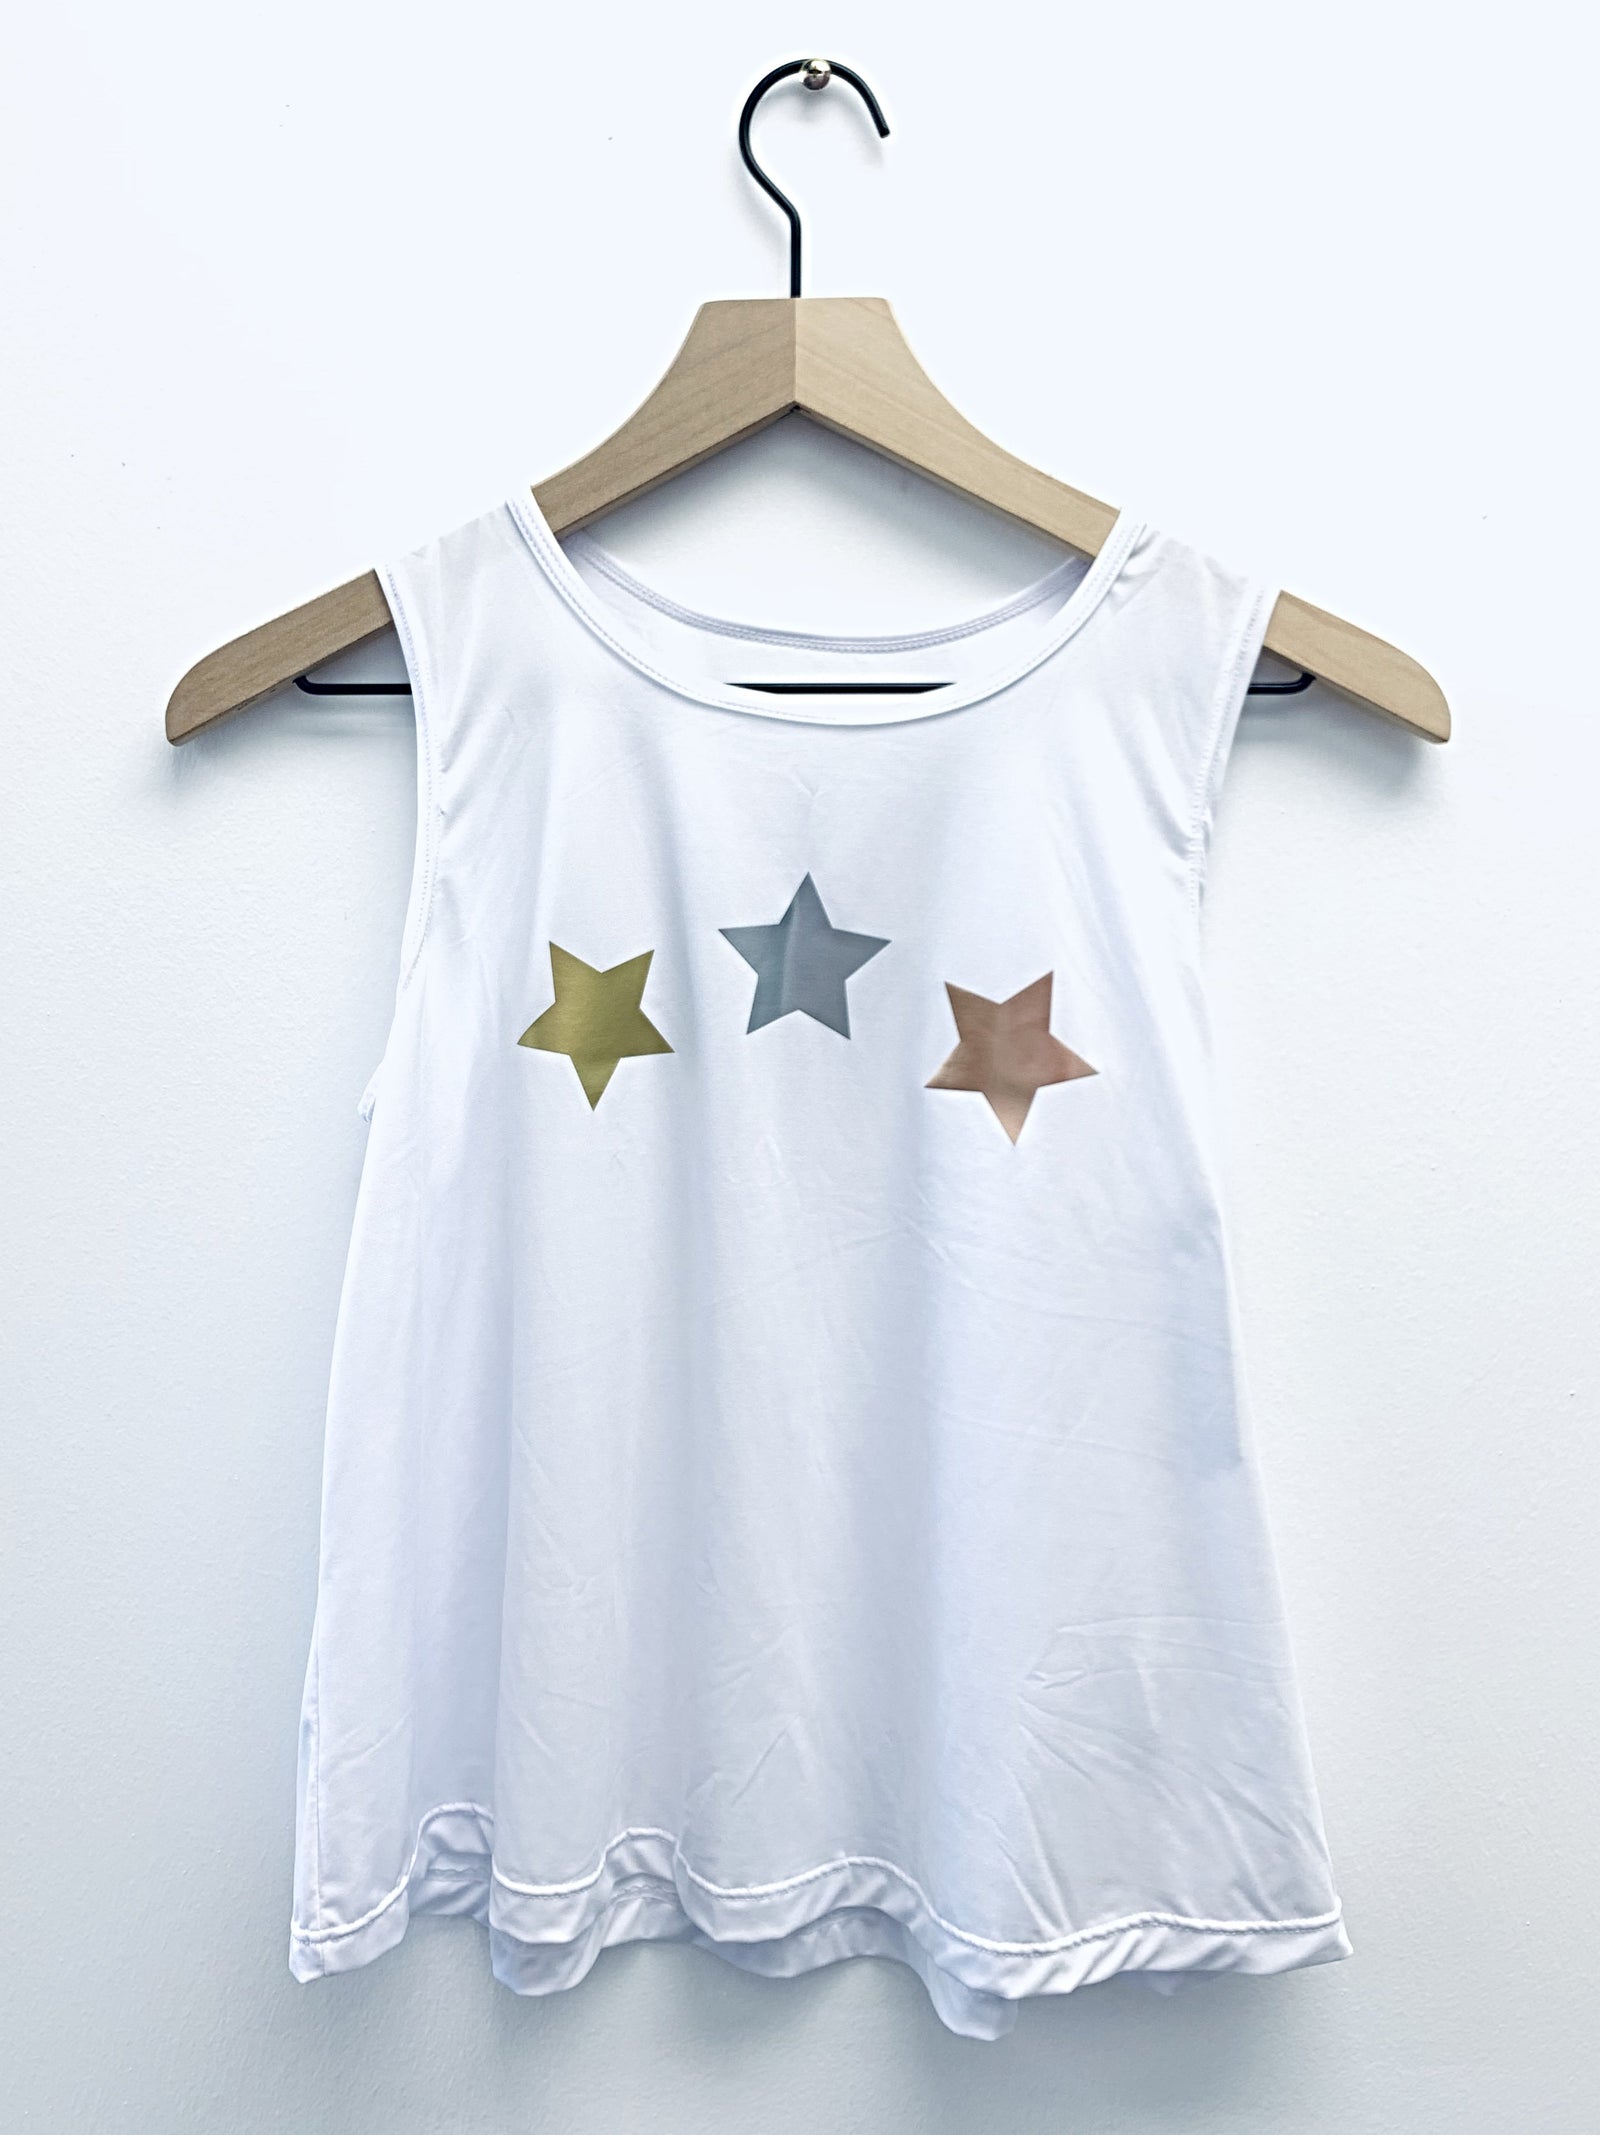 Stars Gold Silver Rose Celestial Print Sleeveless Dry Fit Kids Girl's Tank